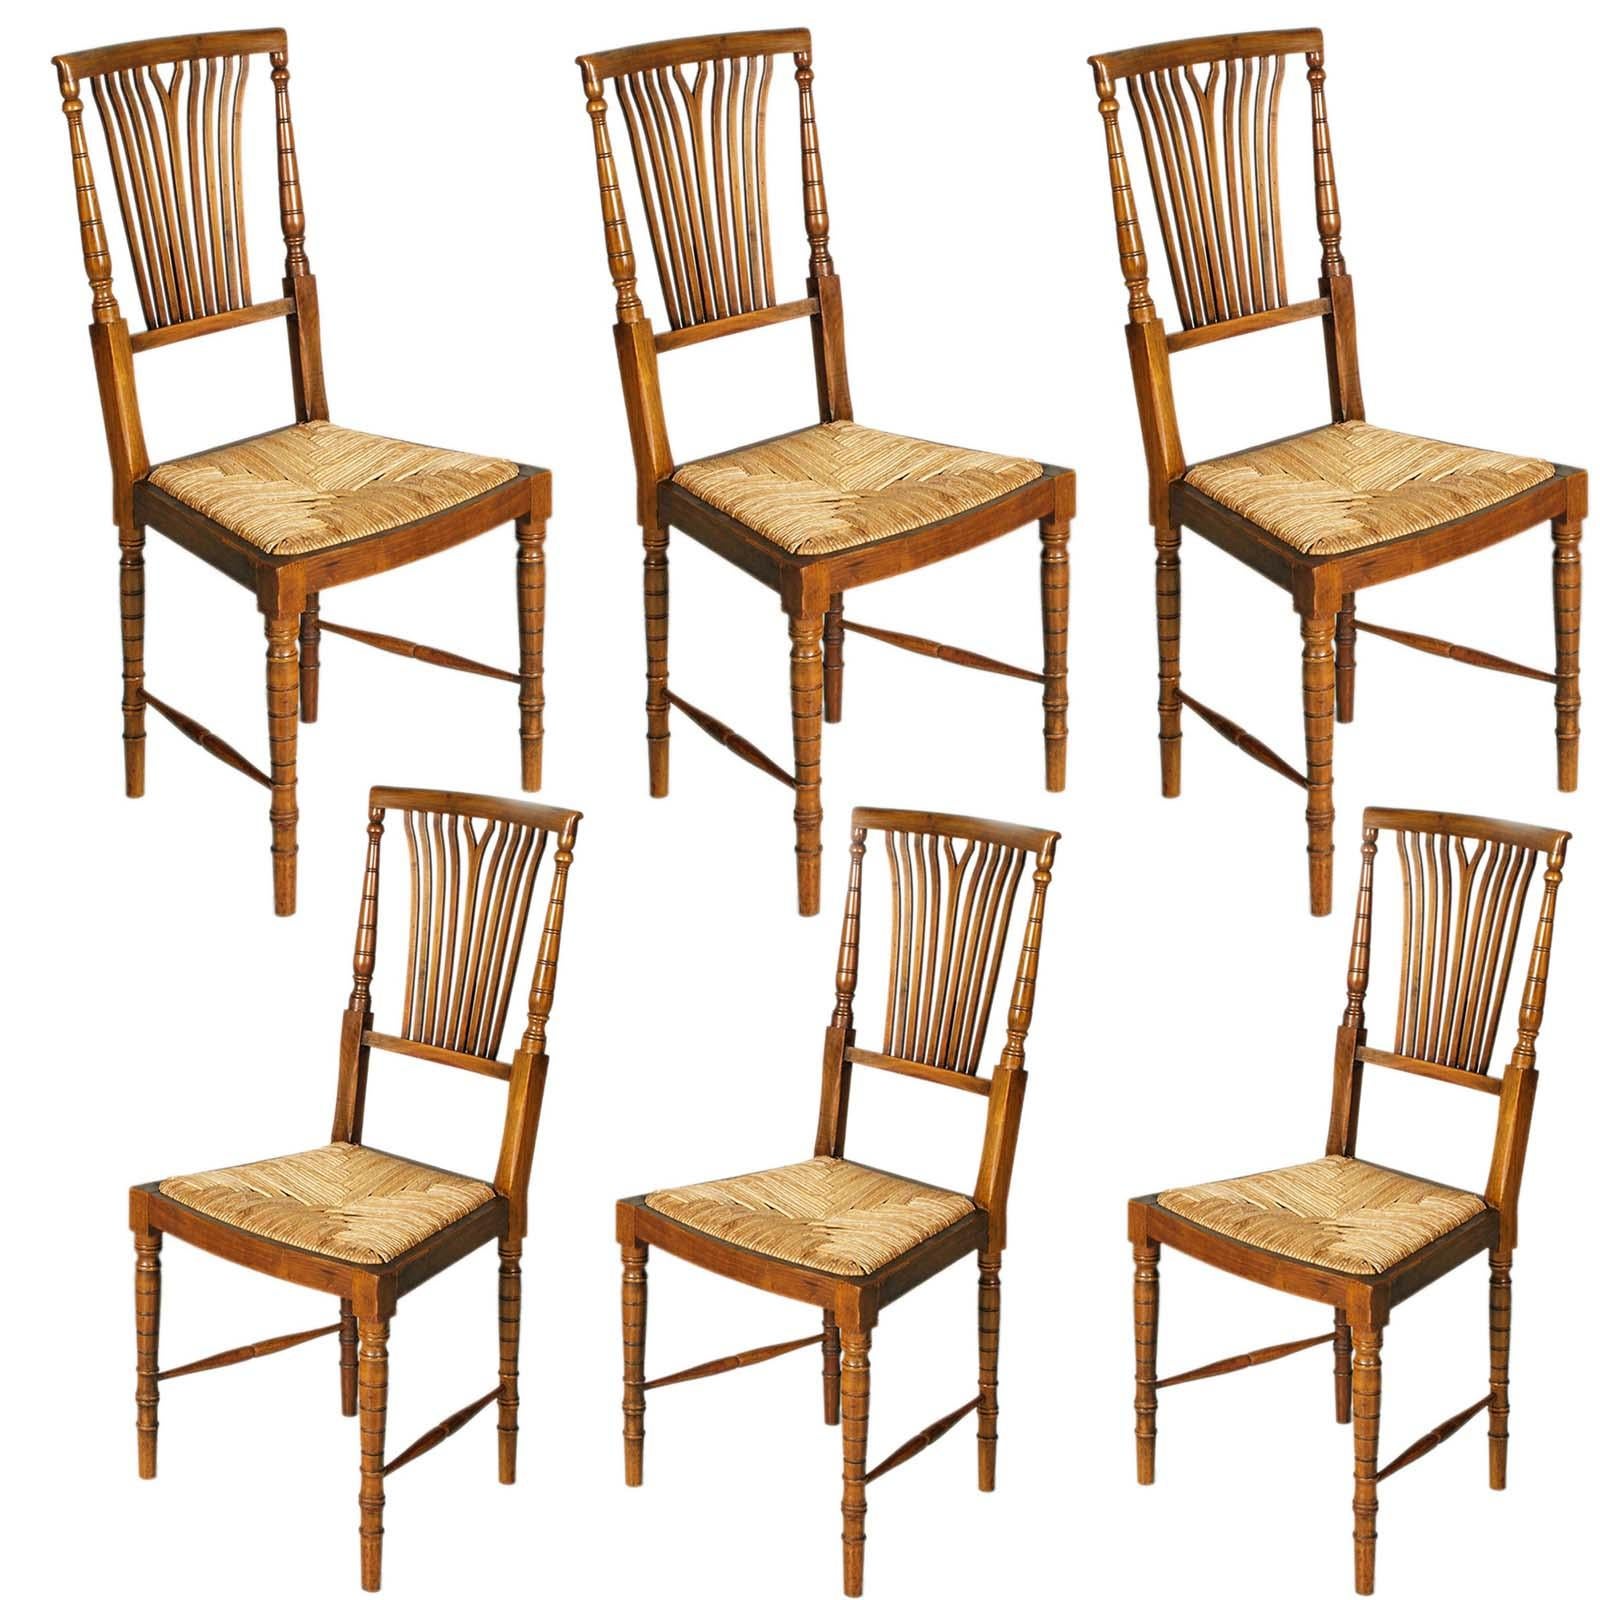 Exceptionnel ensemble de six chaises Chiavarine des années 1960, en bois de noyer avec assise en paille d'origine faite à la main, en excellent état, robustes et sans défauts.
Fabricant Fratelli Levaggi.

Abuot Gaetano Descalzi-CHIAVARINA CHAIR-
Ce